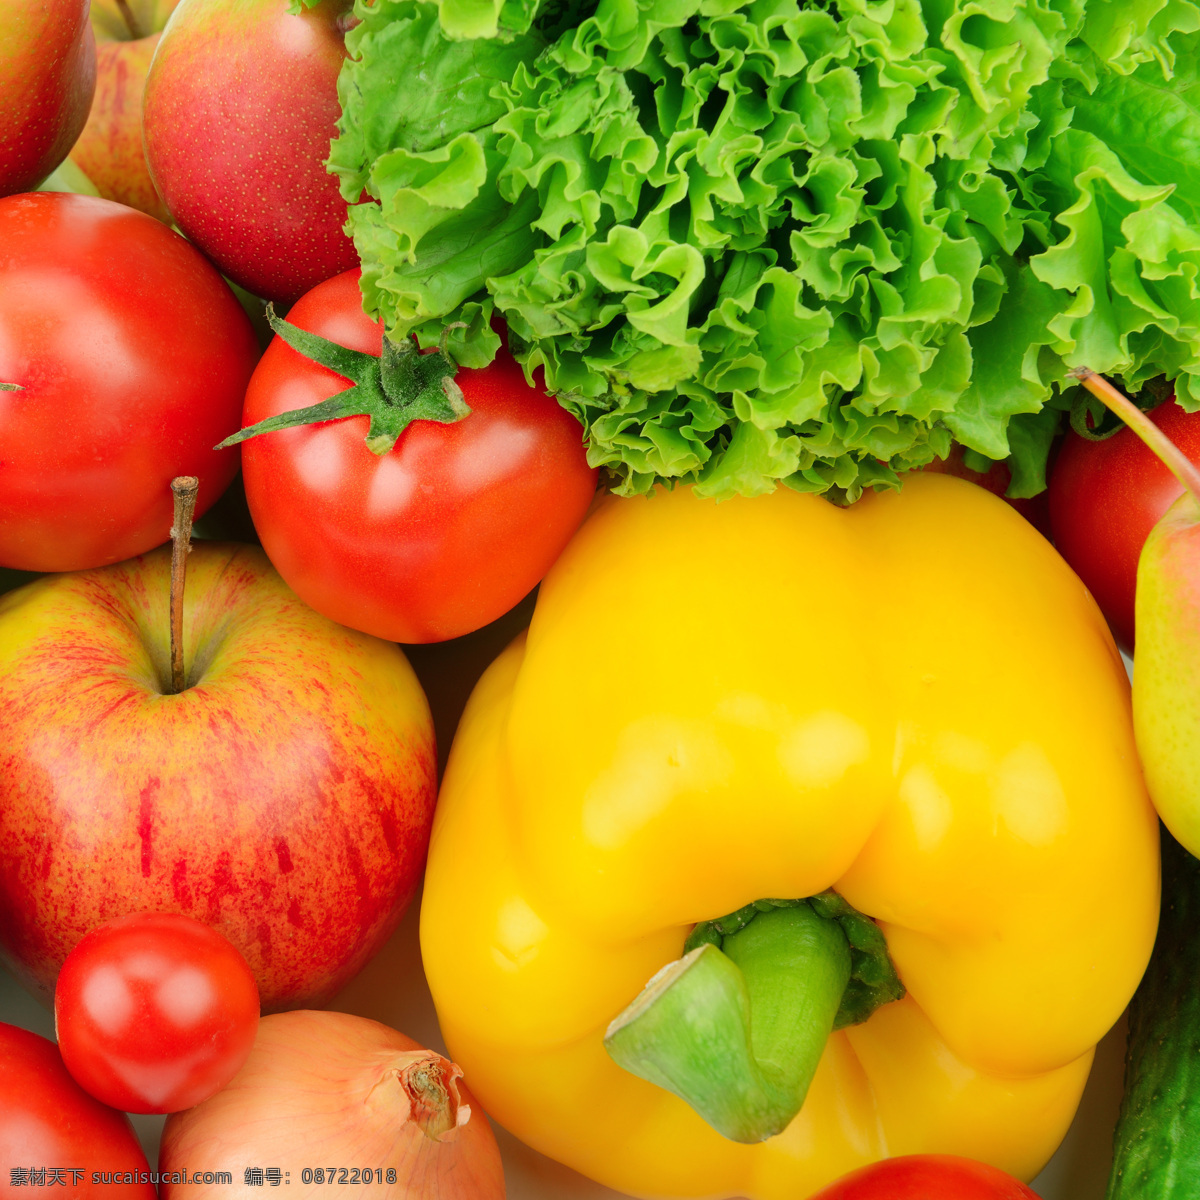 新鲜蔬菜 蔬菜水果 蔬菜 水果 蔬菜高清图 番茄 小番茄 西红柿 青菜 灯笼椒 洋葱 新鲜 健康 农作物 生物世界